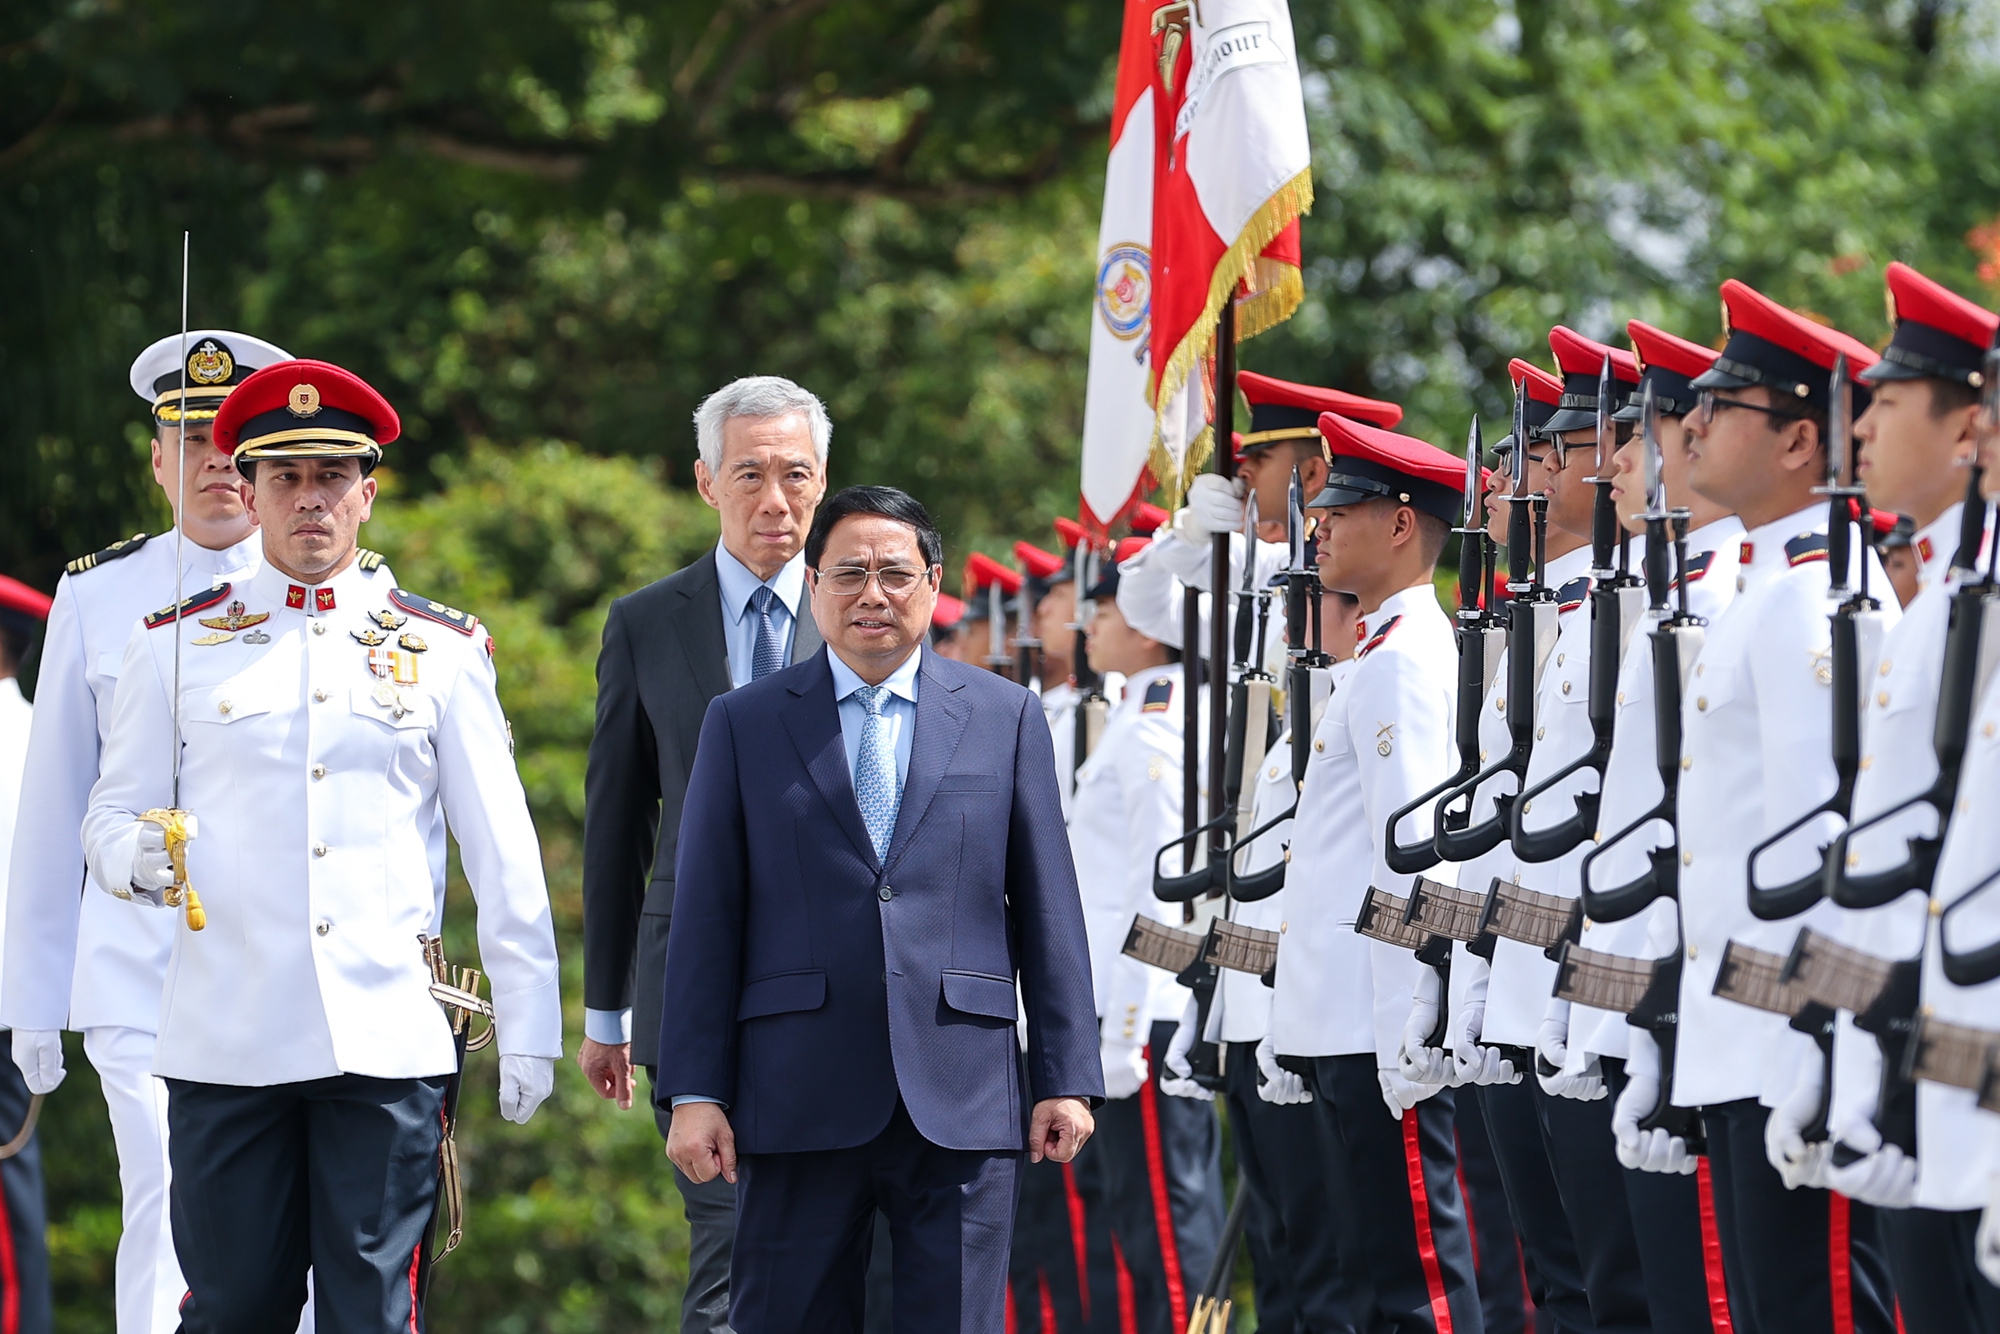 Thủ tướng Singapore Lý Hiển Long và Phu nhân chủ trì lễ đón Thủ tướng Phạm Minh Chính và Phu nhân, cùng đoàn đại biểu cấp cao Việt Nam thăm chính thức Singapore. Ảnh: VGP.